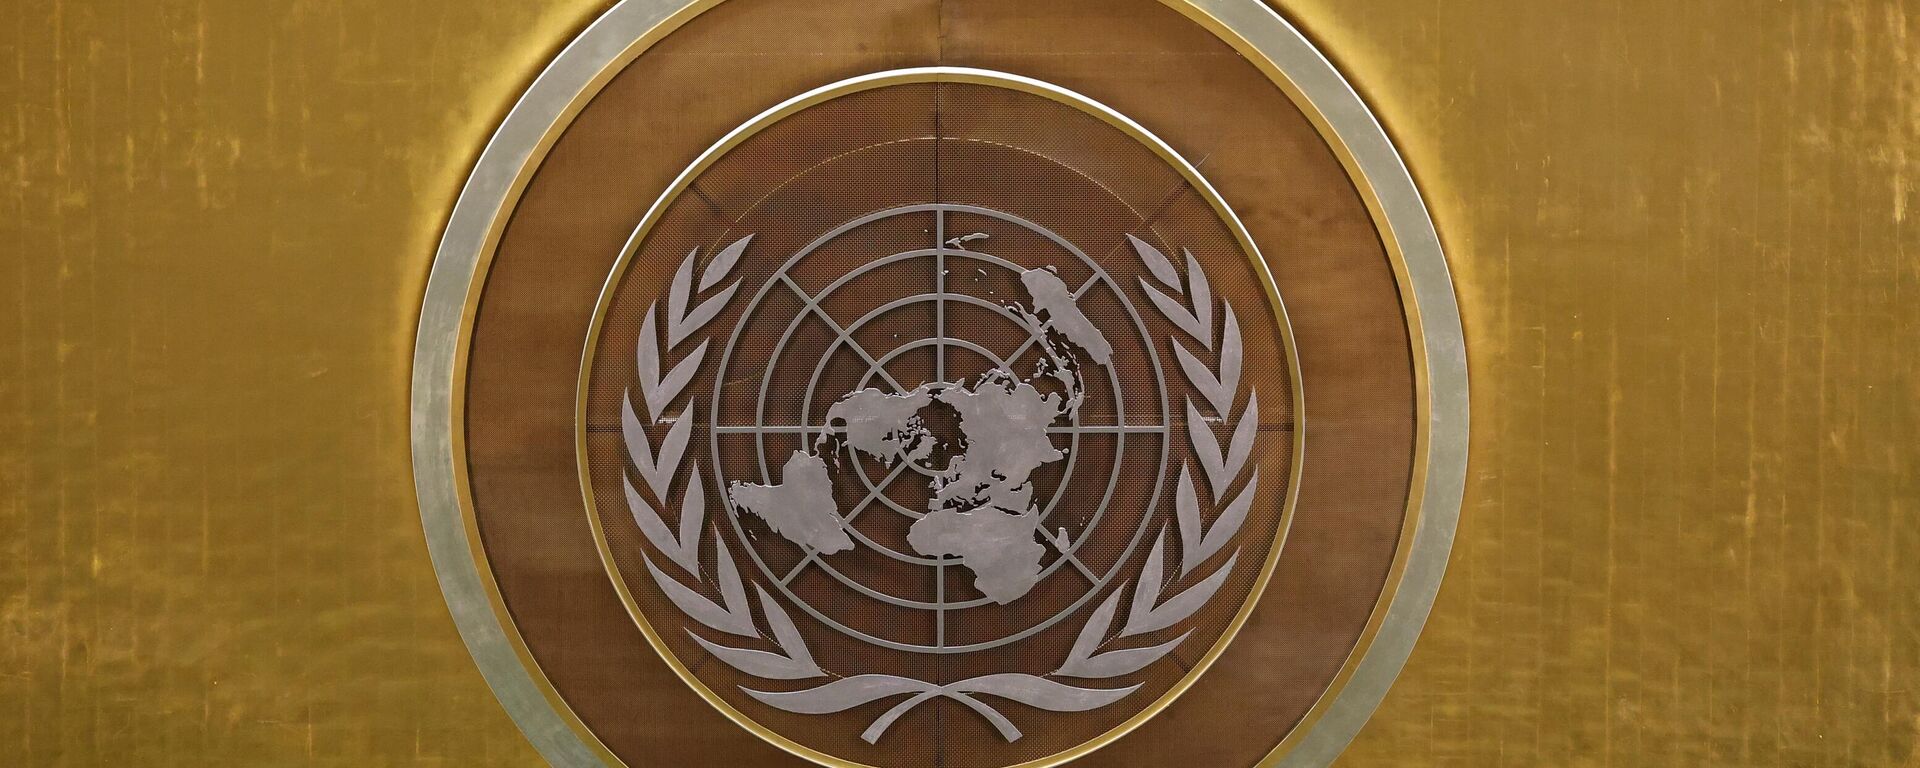 Biểu tượng của Liên hợp quốc (LHQ) tại Đại hội đồng Liên hợp quốc (LHQ) ở New York. - Sputnik Việt Nam, 1920, 03.11.2021